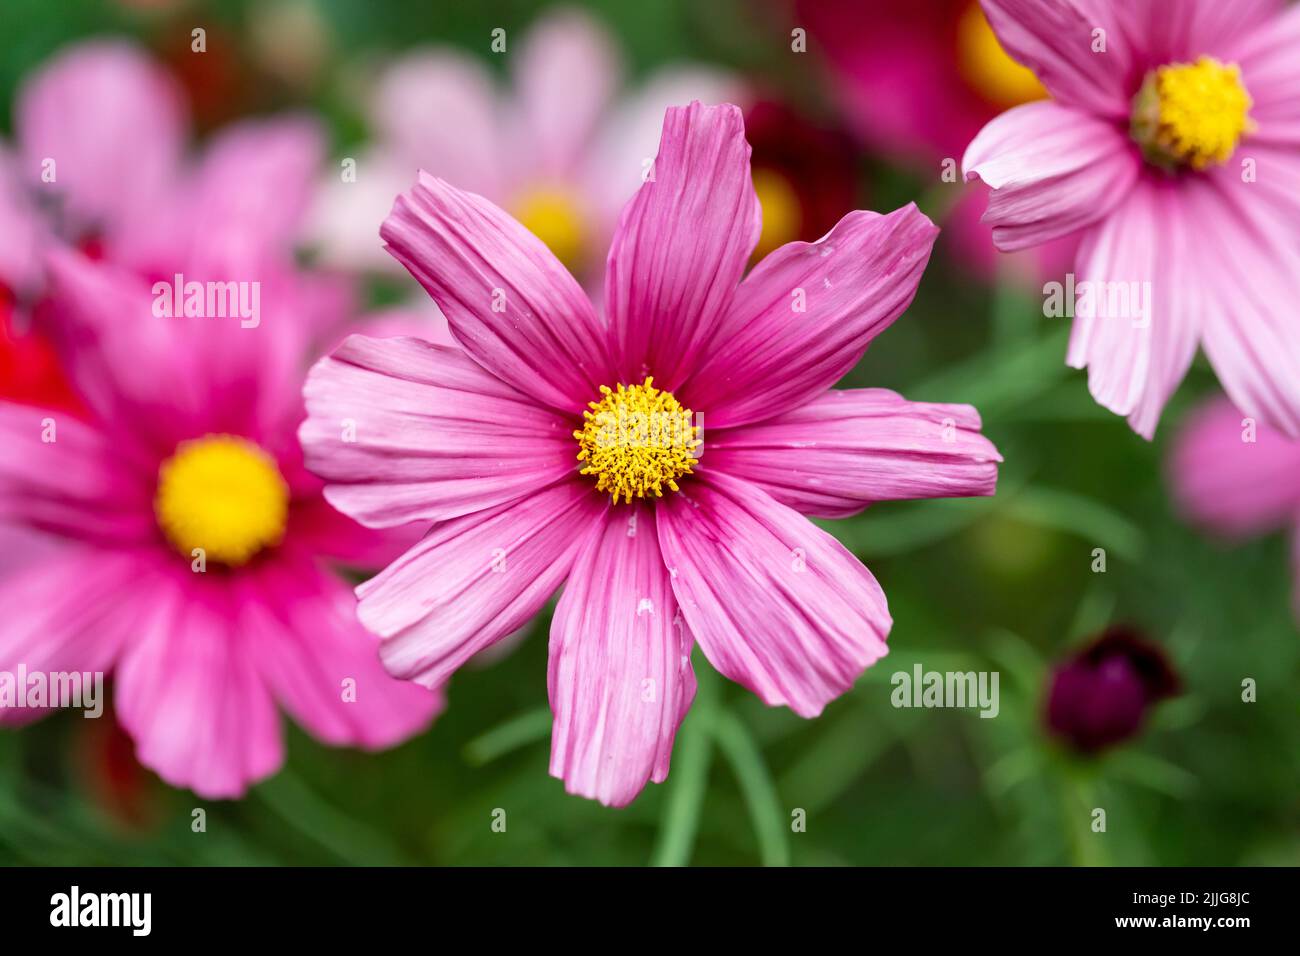 Cosmos bipinnatus (garden cosmos) pink flowers in an English garden closeup Stock Photo